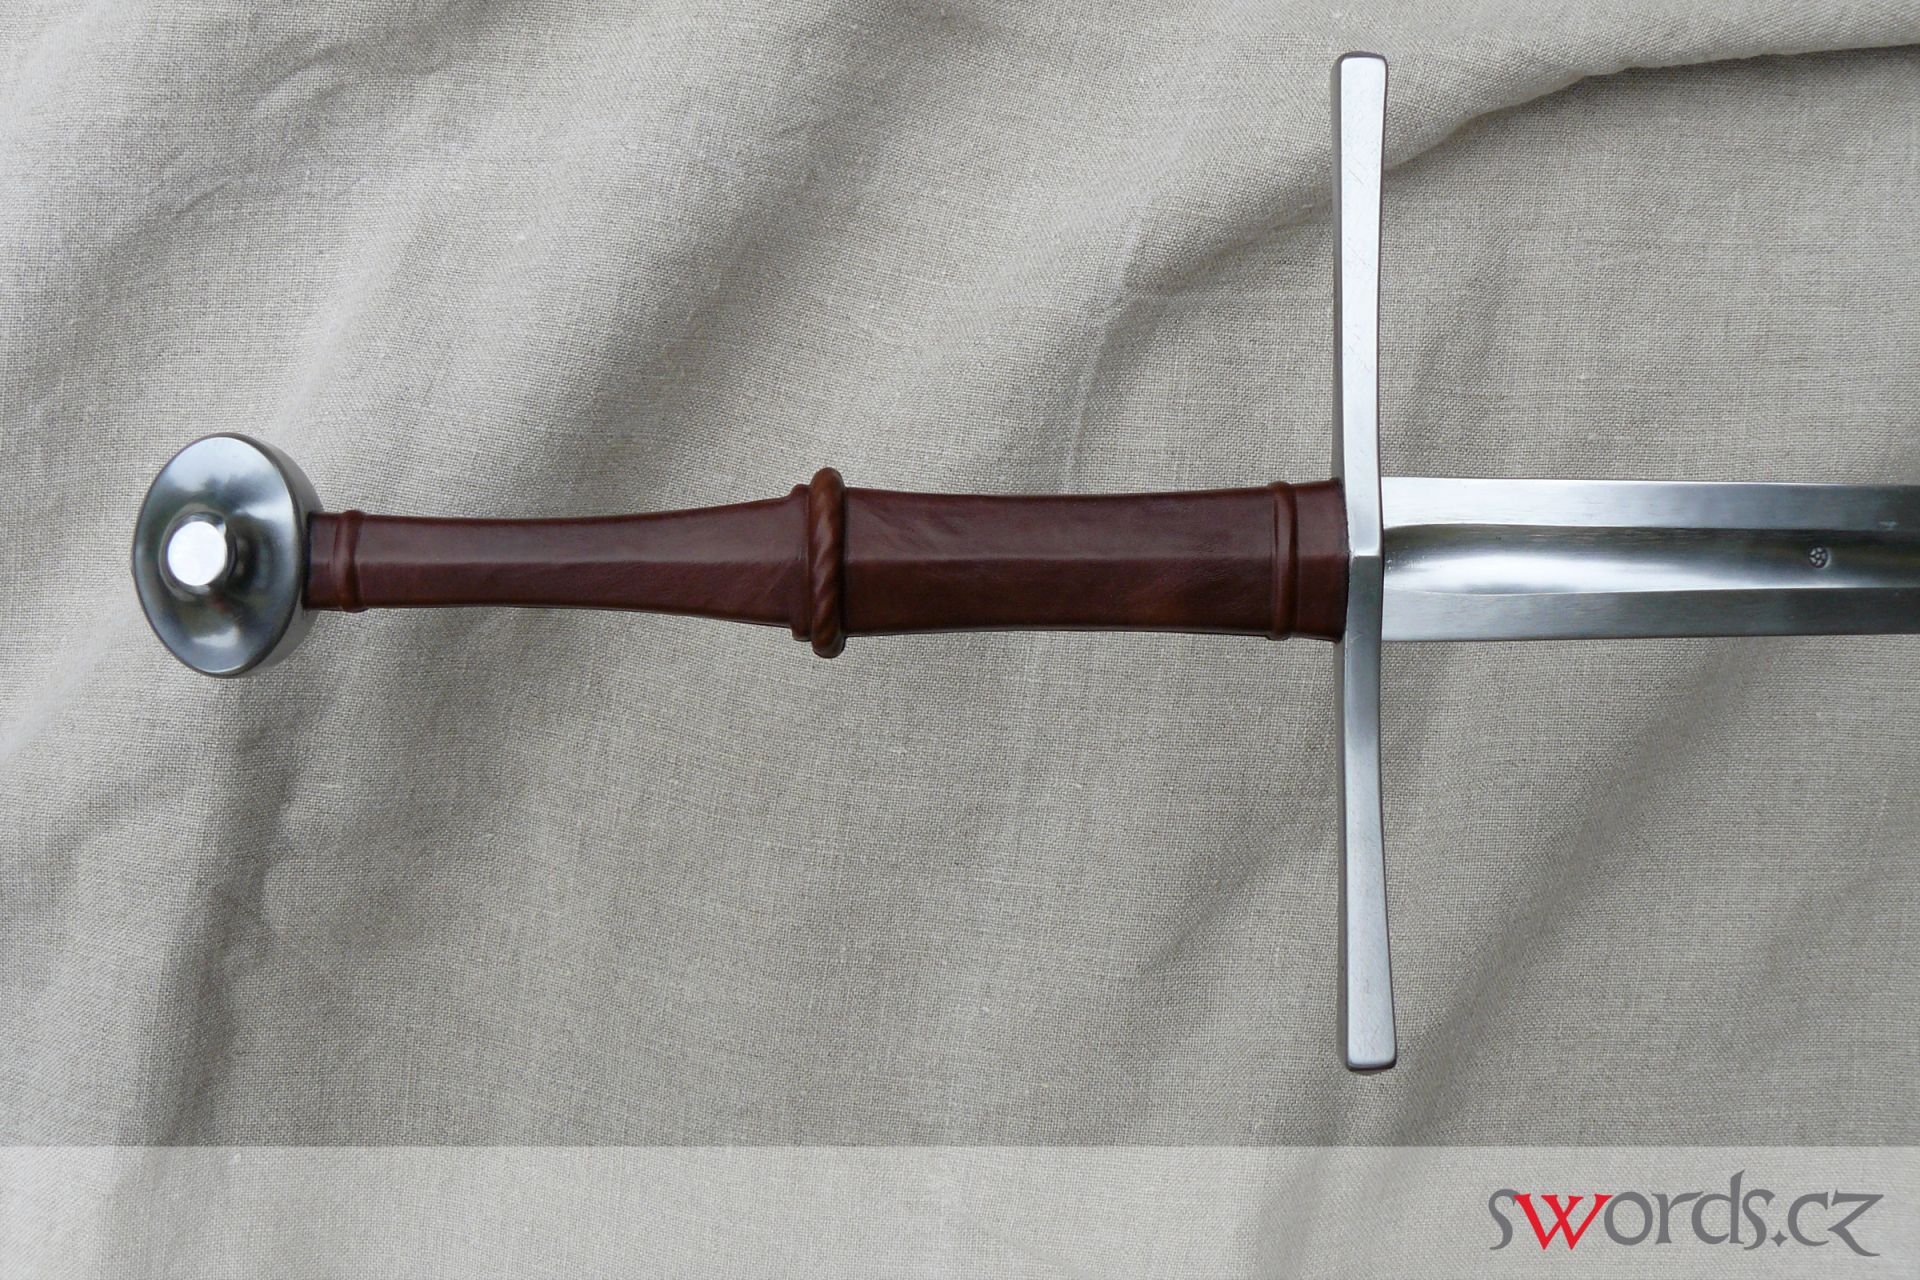 swords.cz - swords